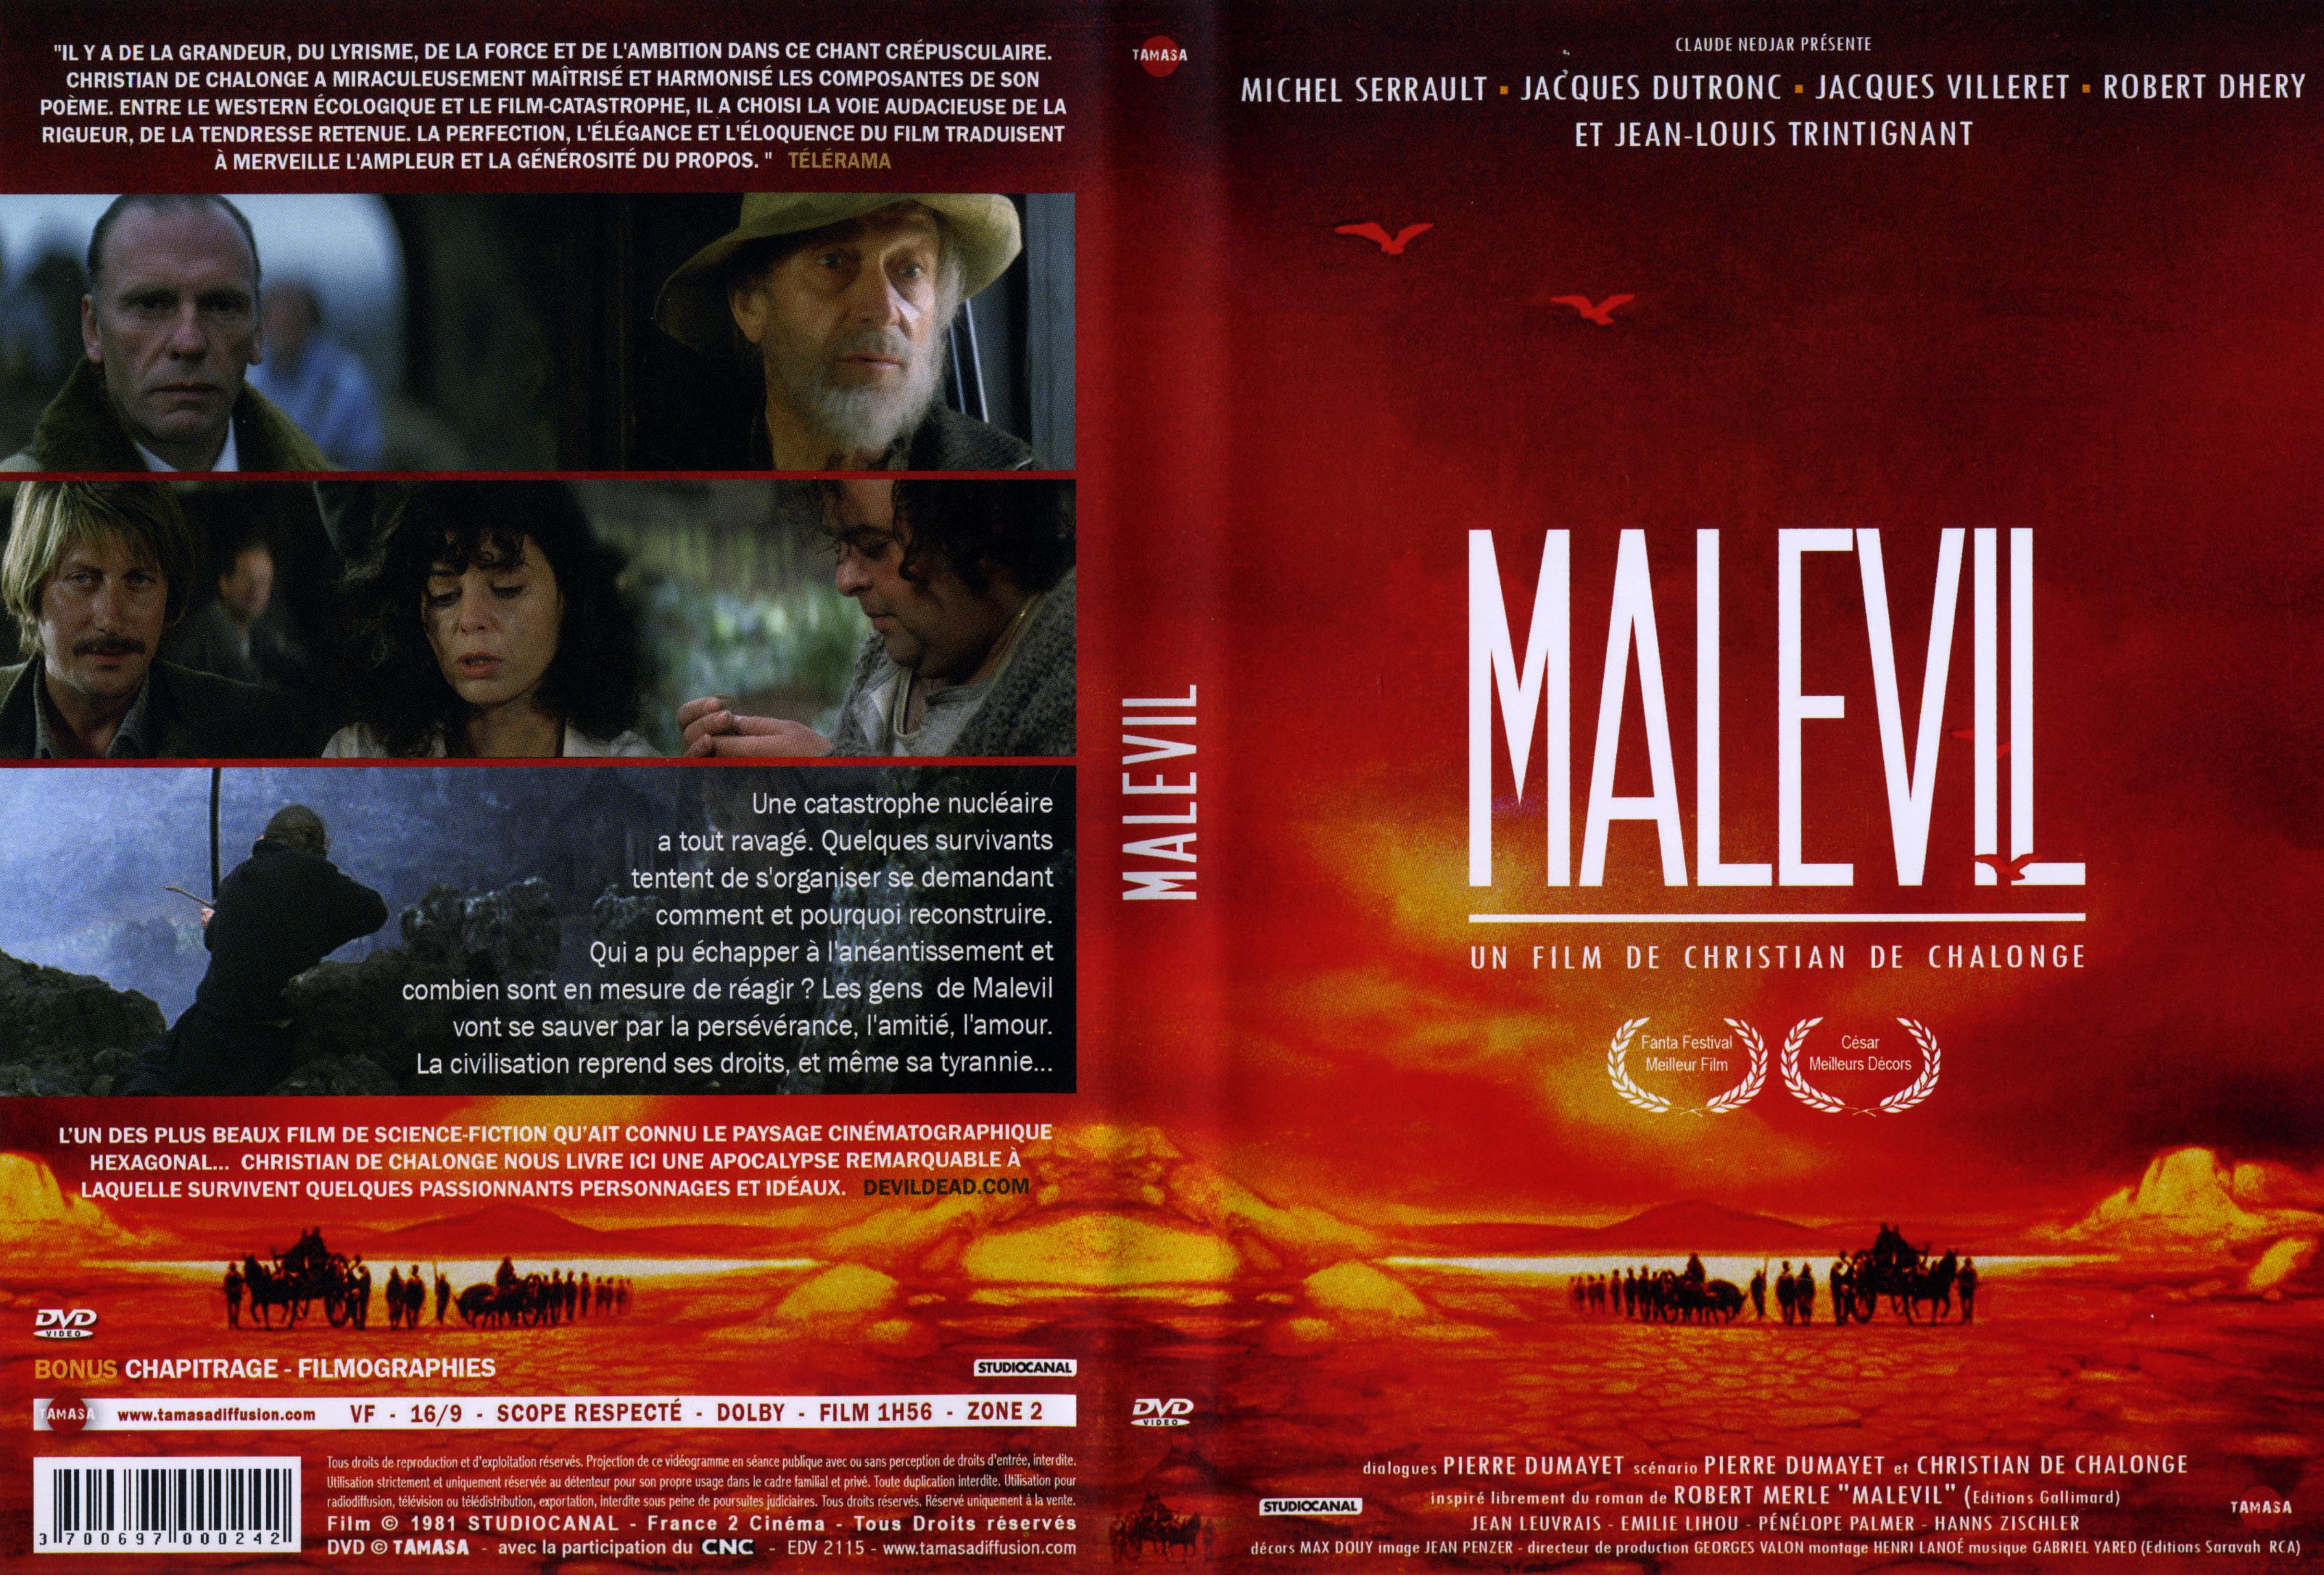 Jaquette DVD Malevil v2